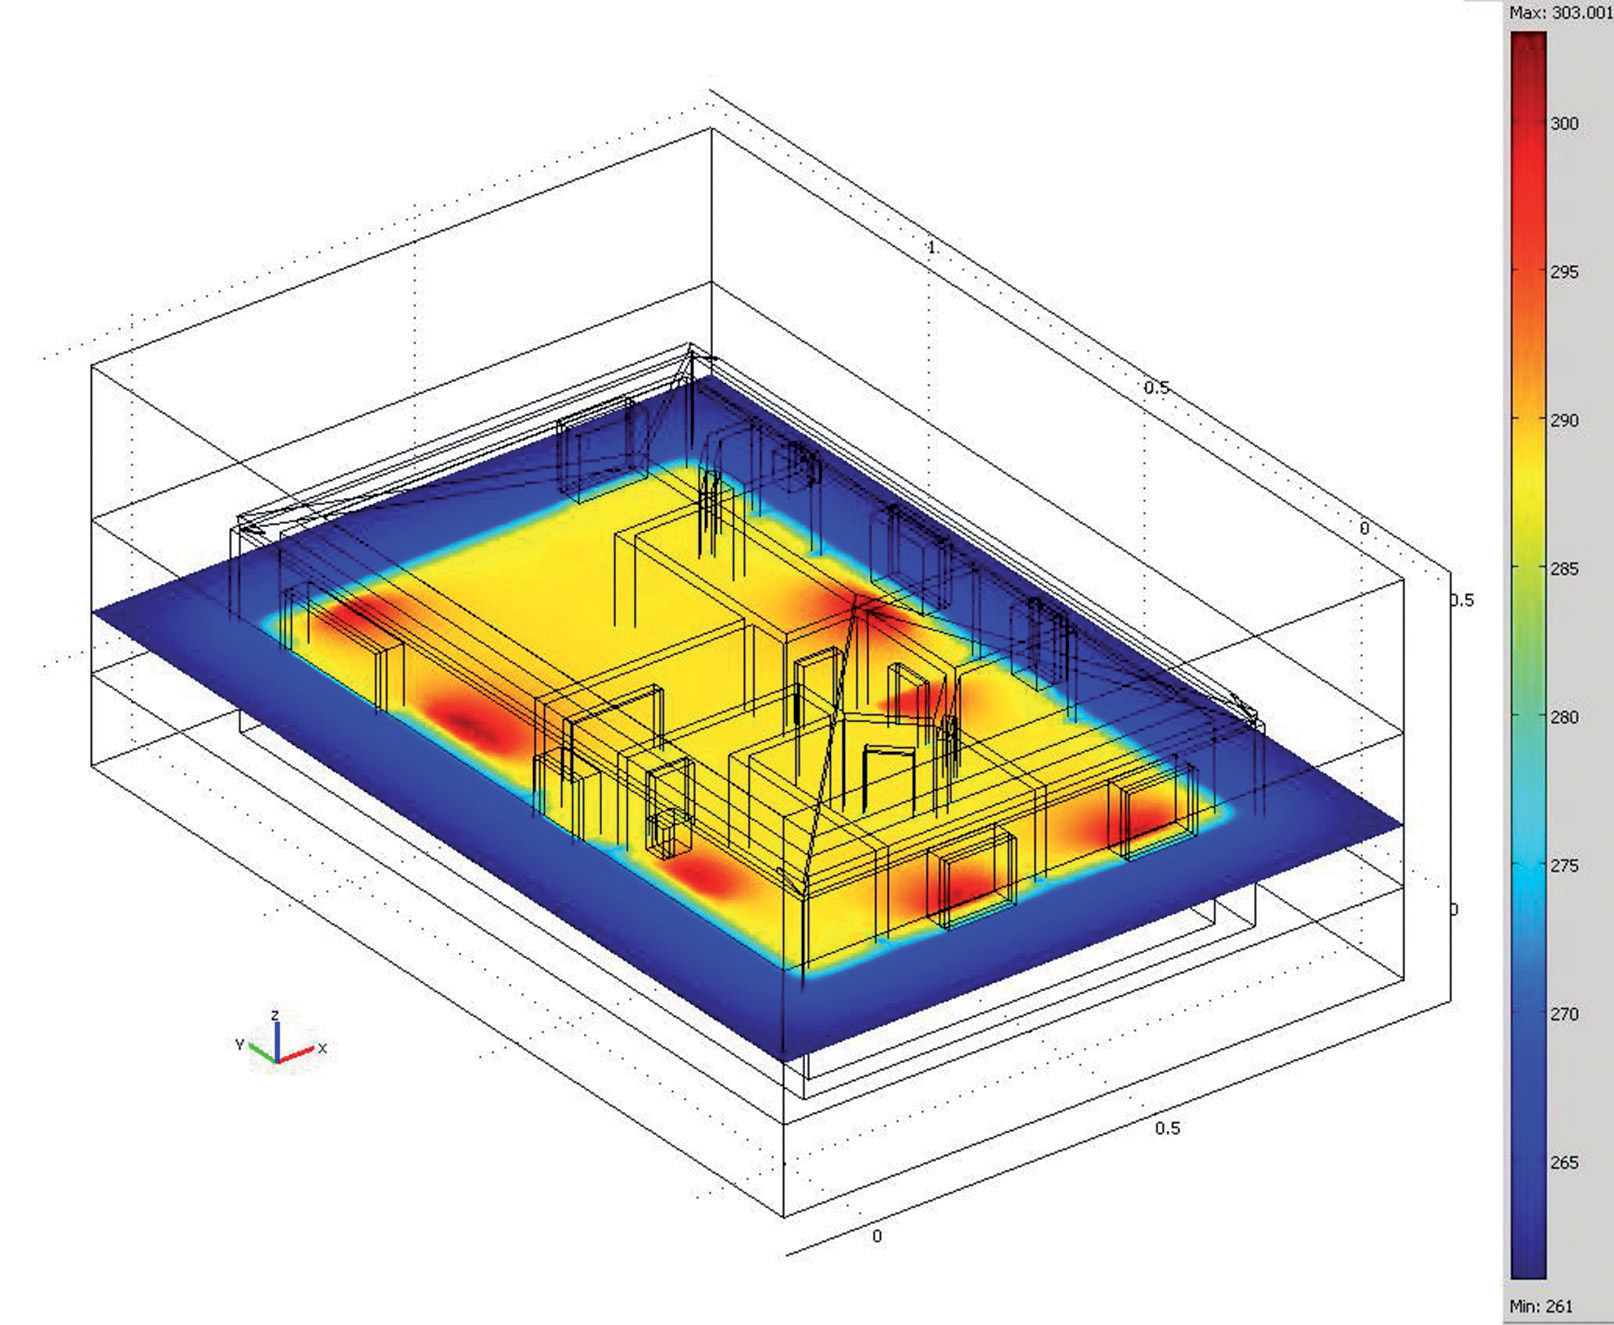 Obr. 2  Zobrazenie optimálneho priebehu vykurovania (režim Slice Plot v rámci sledovania teploty – Predefined quantities: Temperature) vo výške 1 m nad podlahou. Výsledok simulácie (s.p. Comsol)